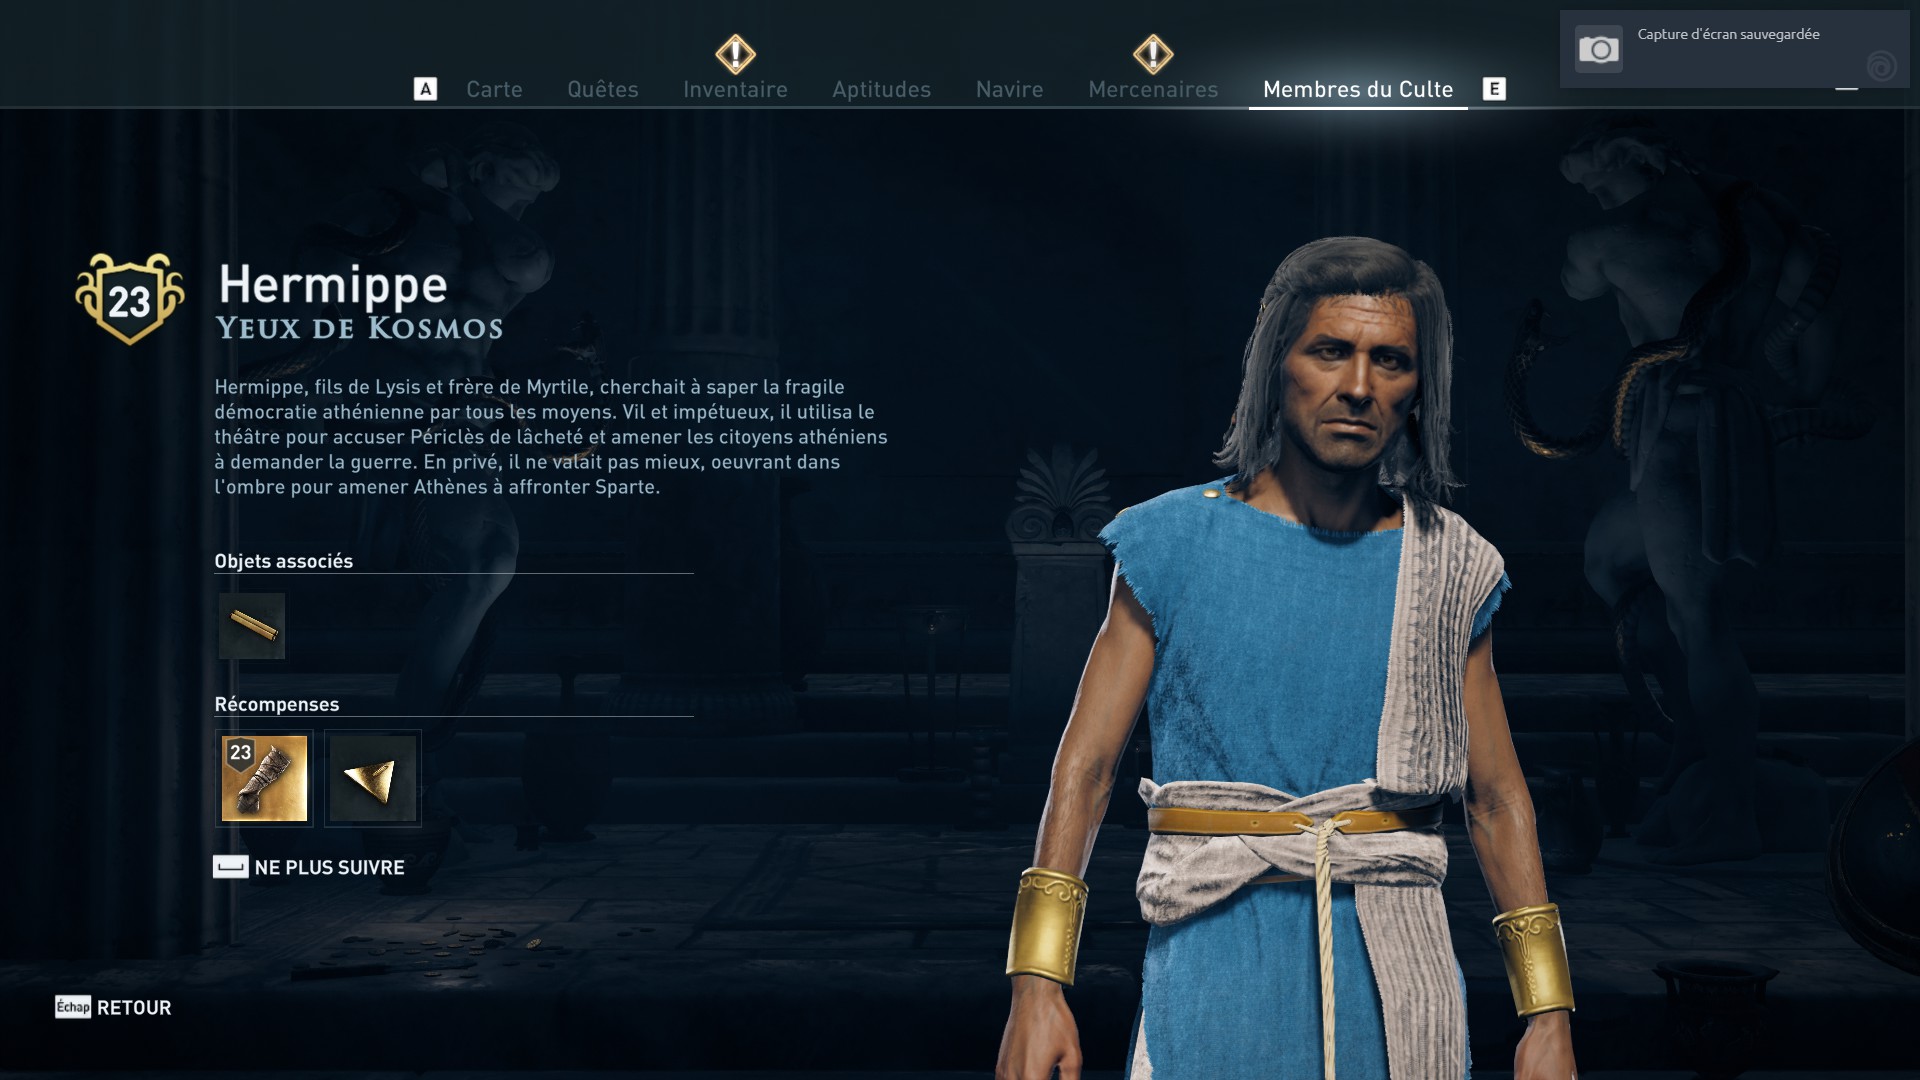 Assassin's Creed Odyssey trouver et tuer les adeptes du culte du Kosmos, ps4, xbox one, pc, ubisoft, jeu vidéo, Yeux de Kosmos, hermippe